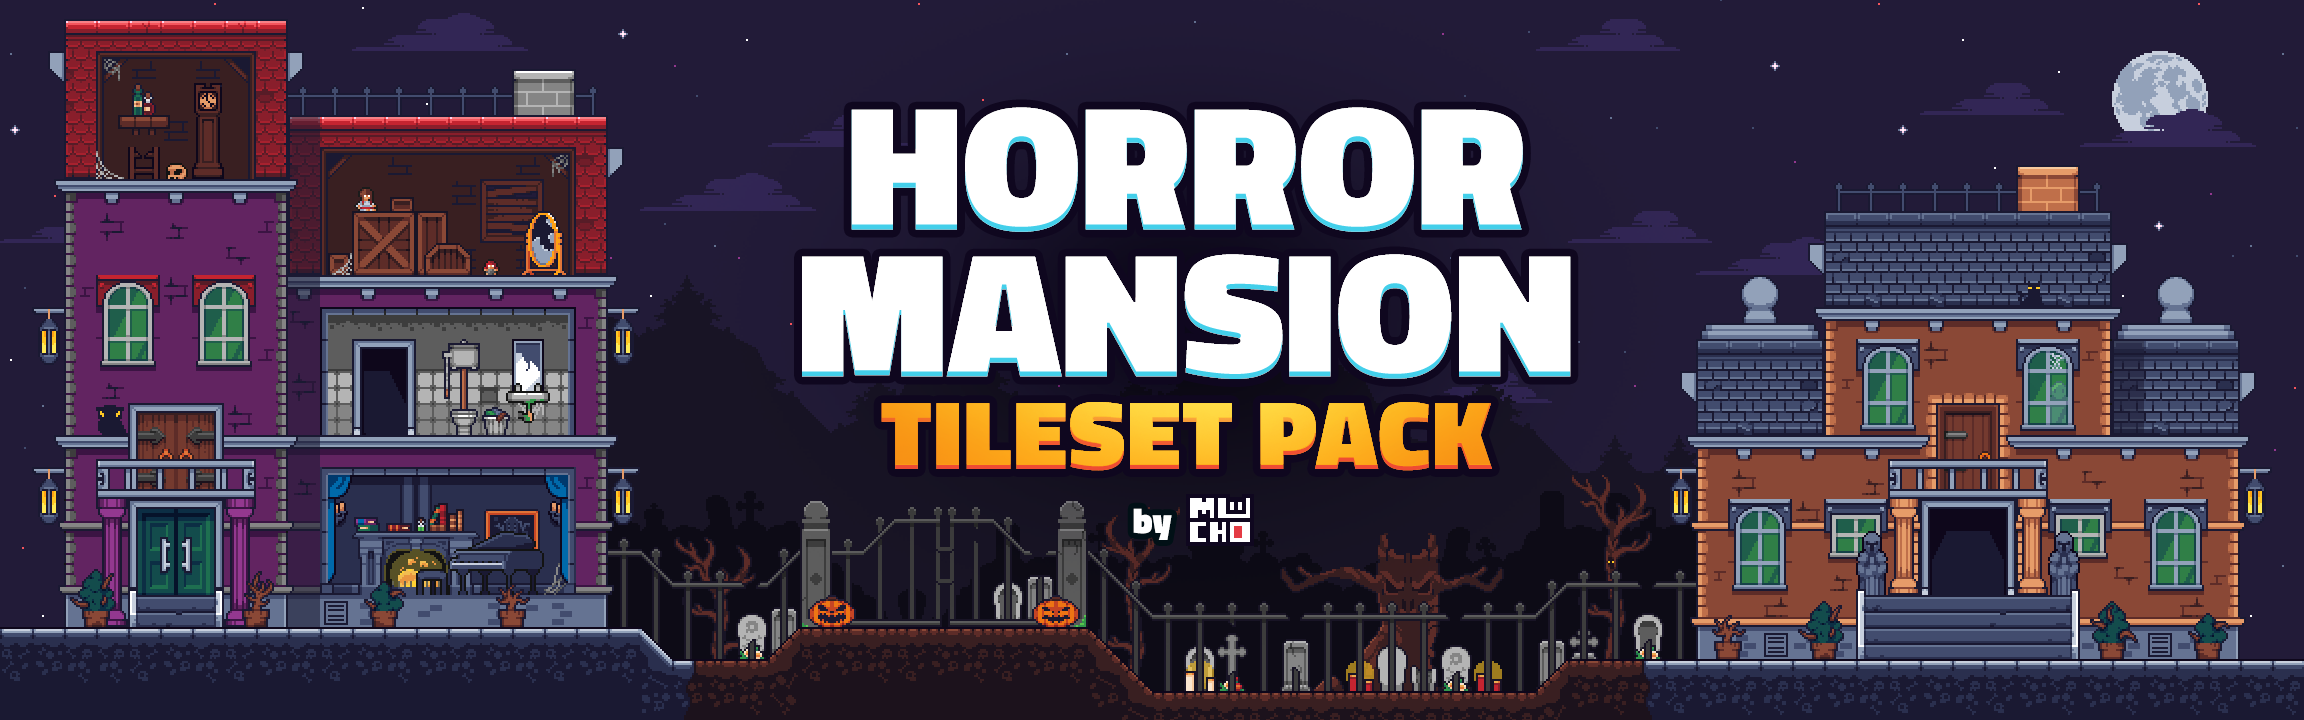 Horror Mansion Tileset Pack